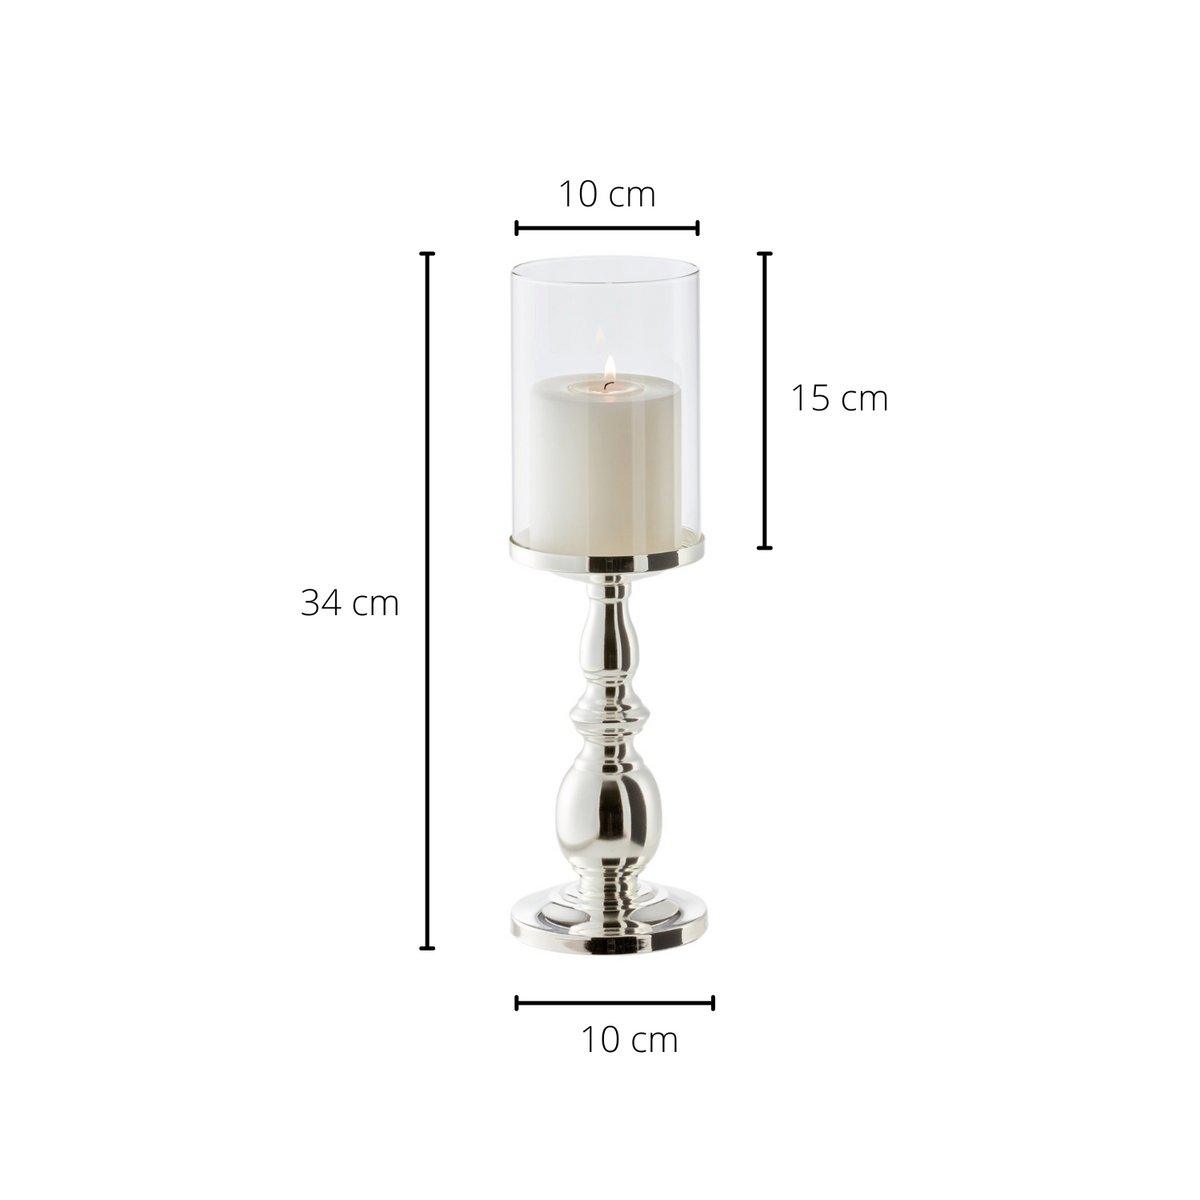 EDZARD Windlicht Mascha, edel versilbert, anlaufgeschützt, Höhe 34 cm, für Kerzen bis Durchmesser 10 cm - HomeDesign Knaus